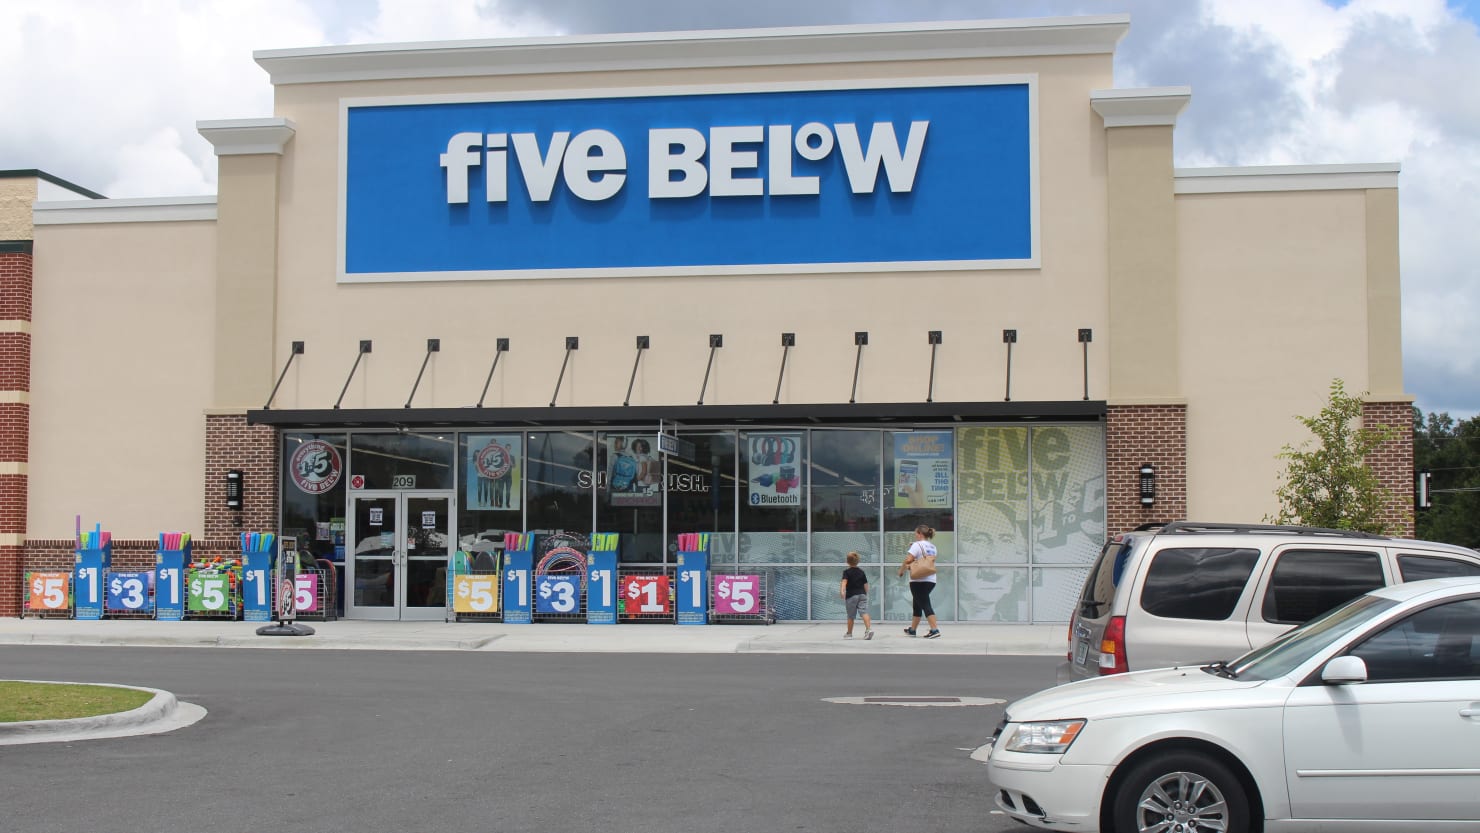 Five Below Now Has Items Above Five Dollars